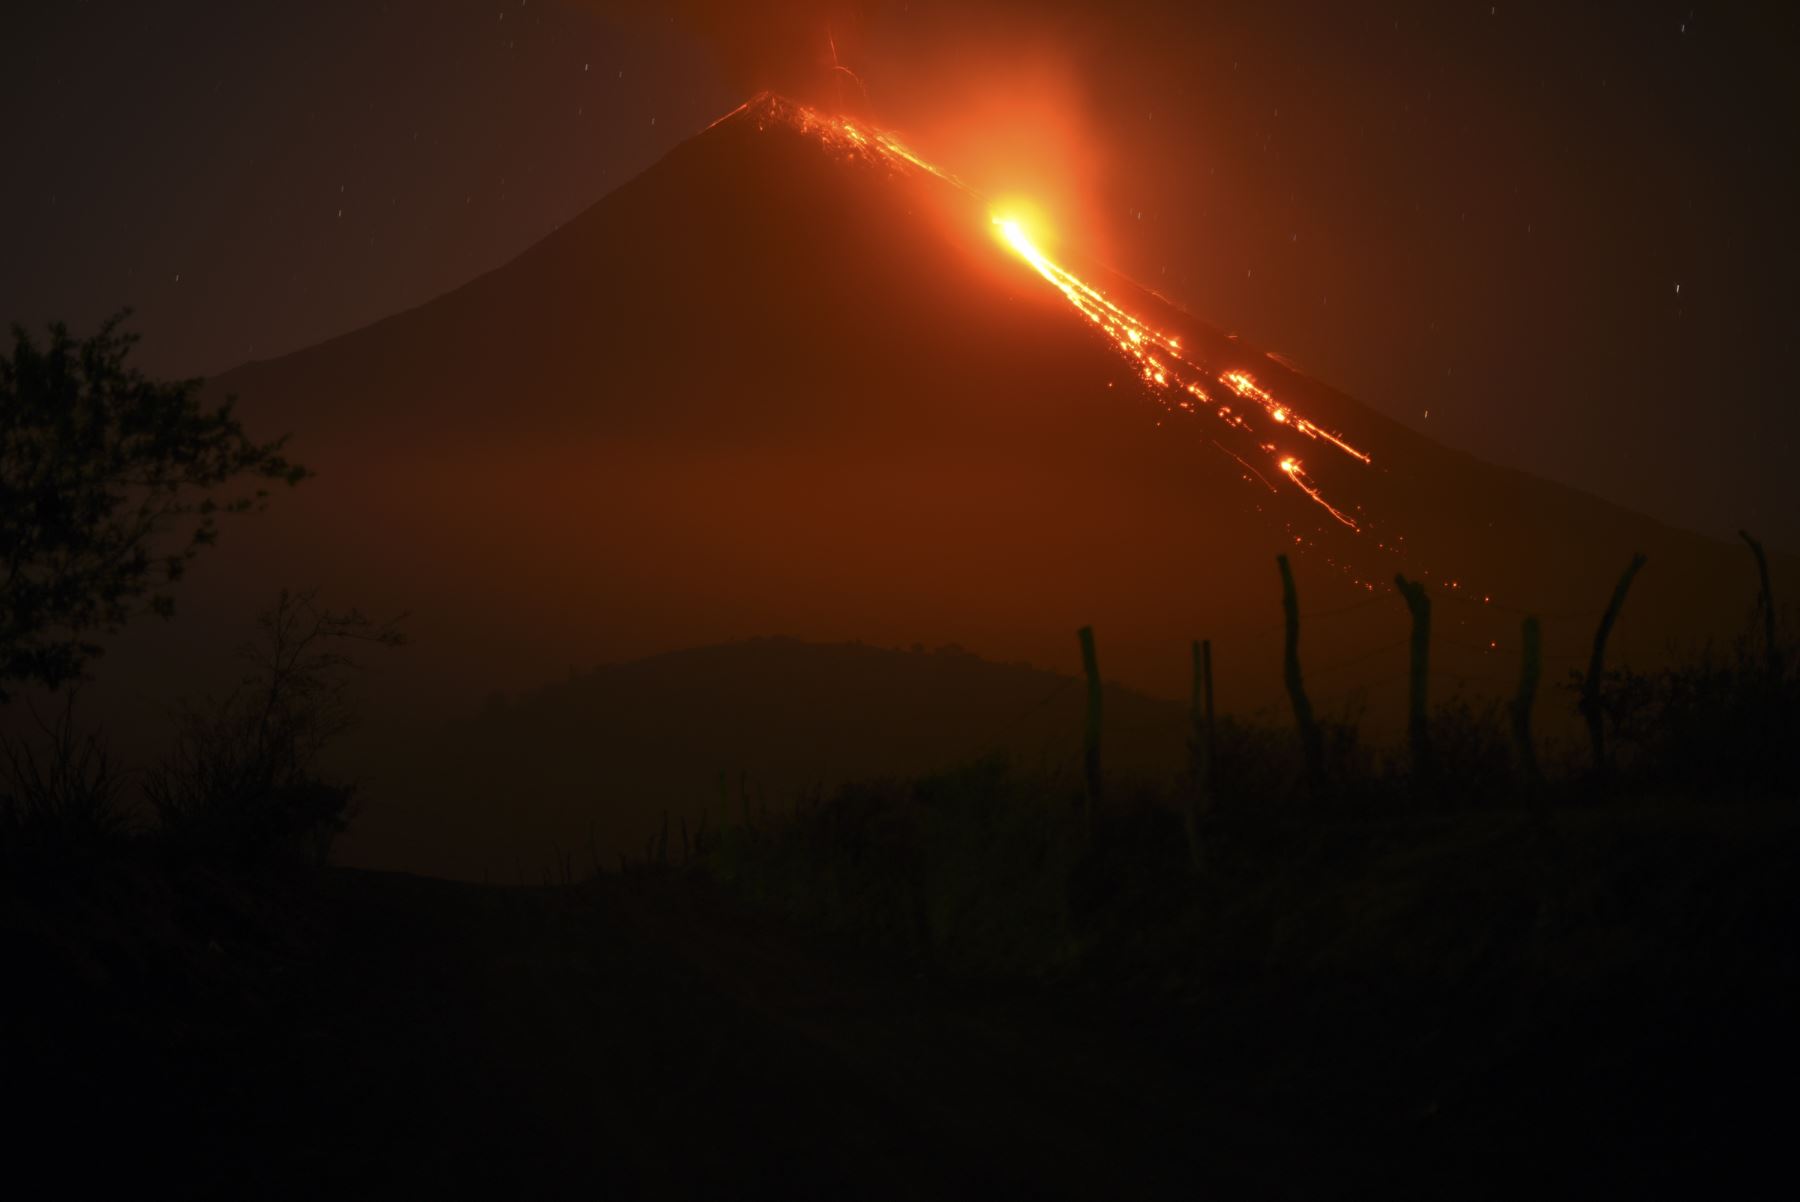 El volcán lanzó gases y se siente un "molesto" olor a azufre en el ambiente. Foto: AFP